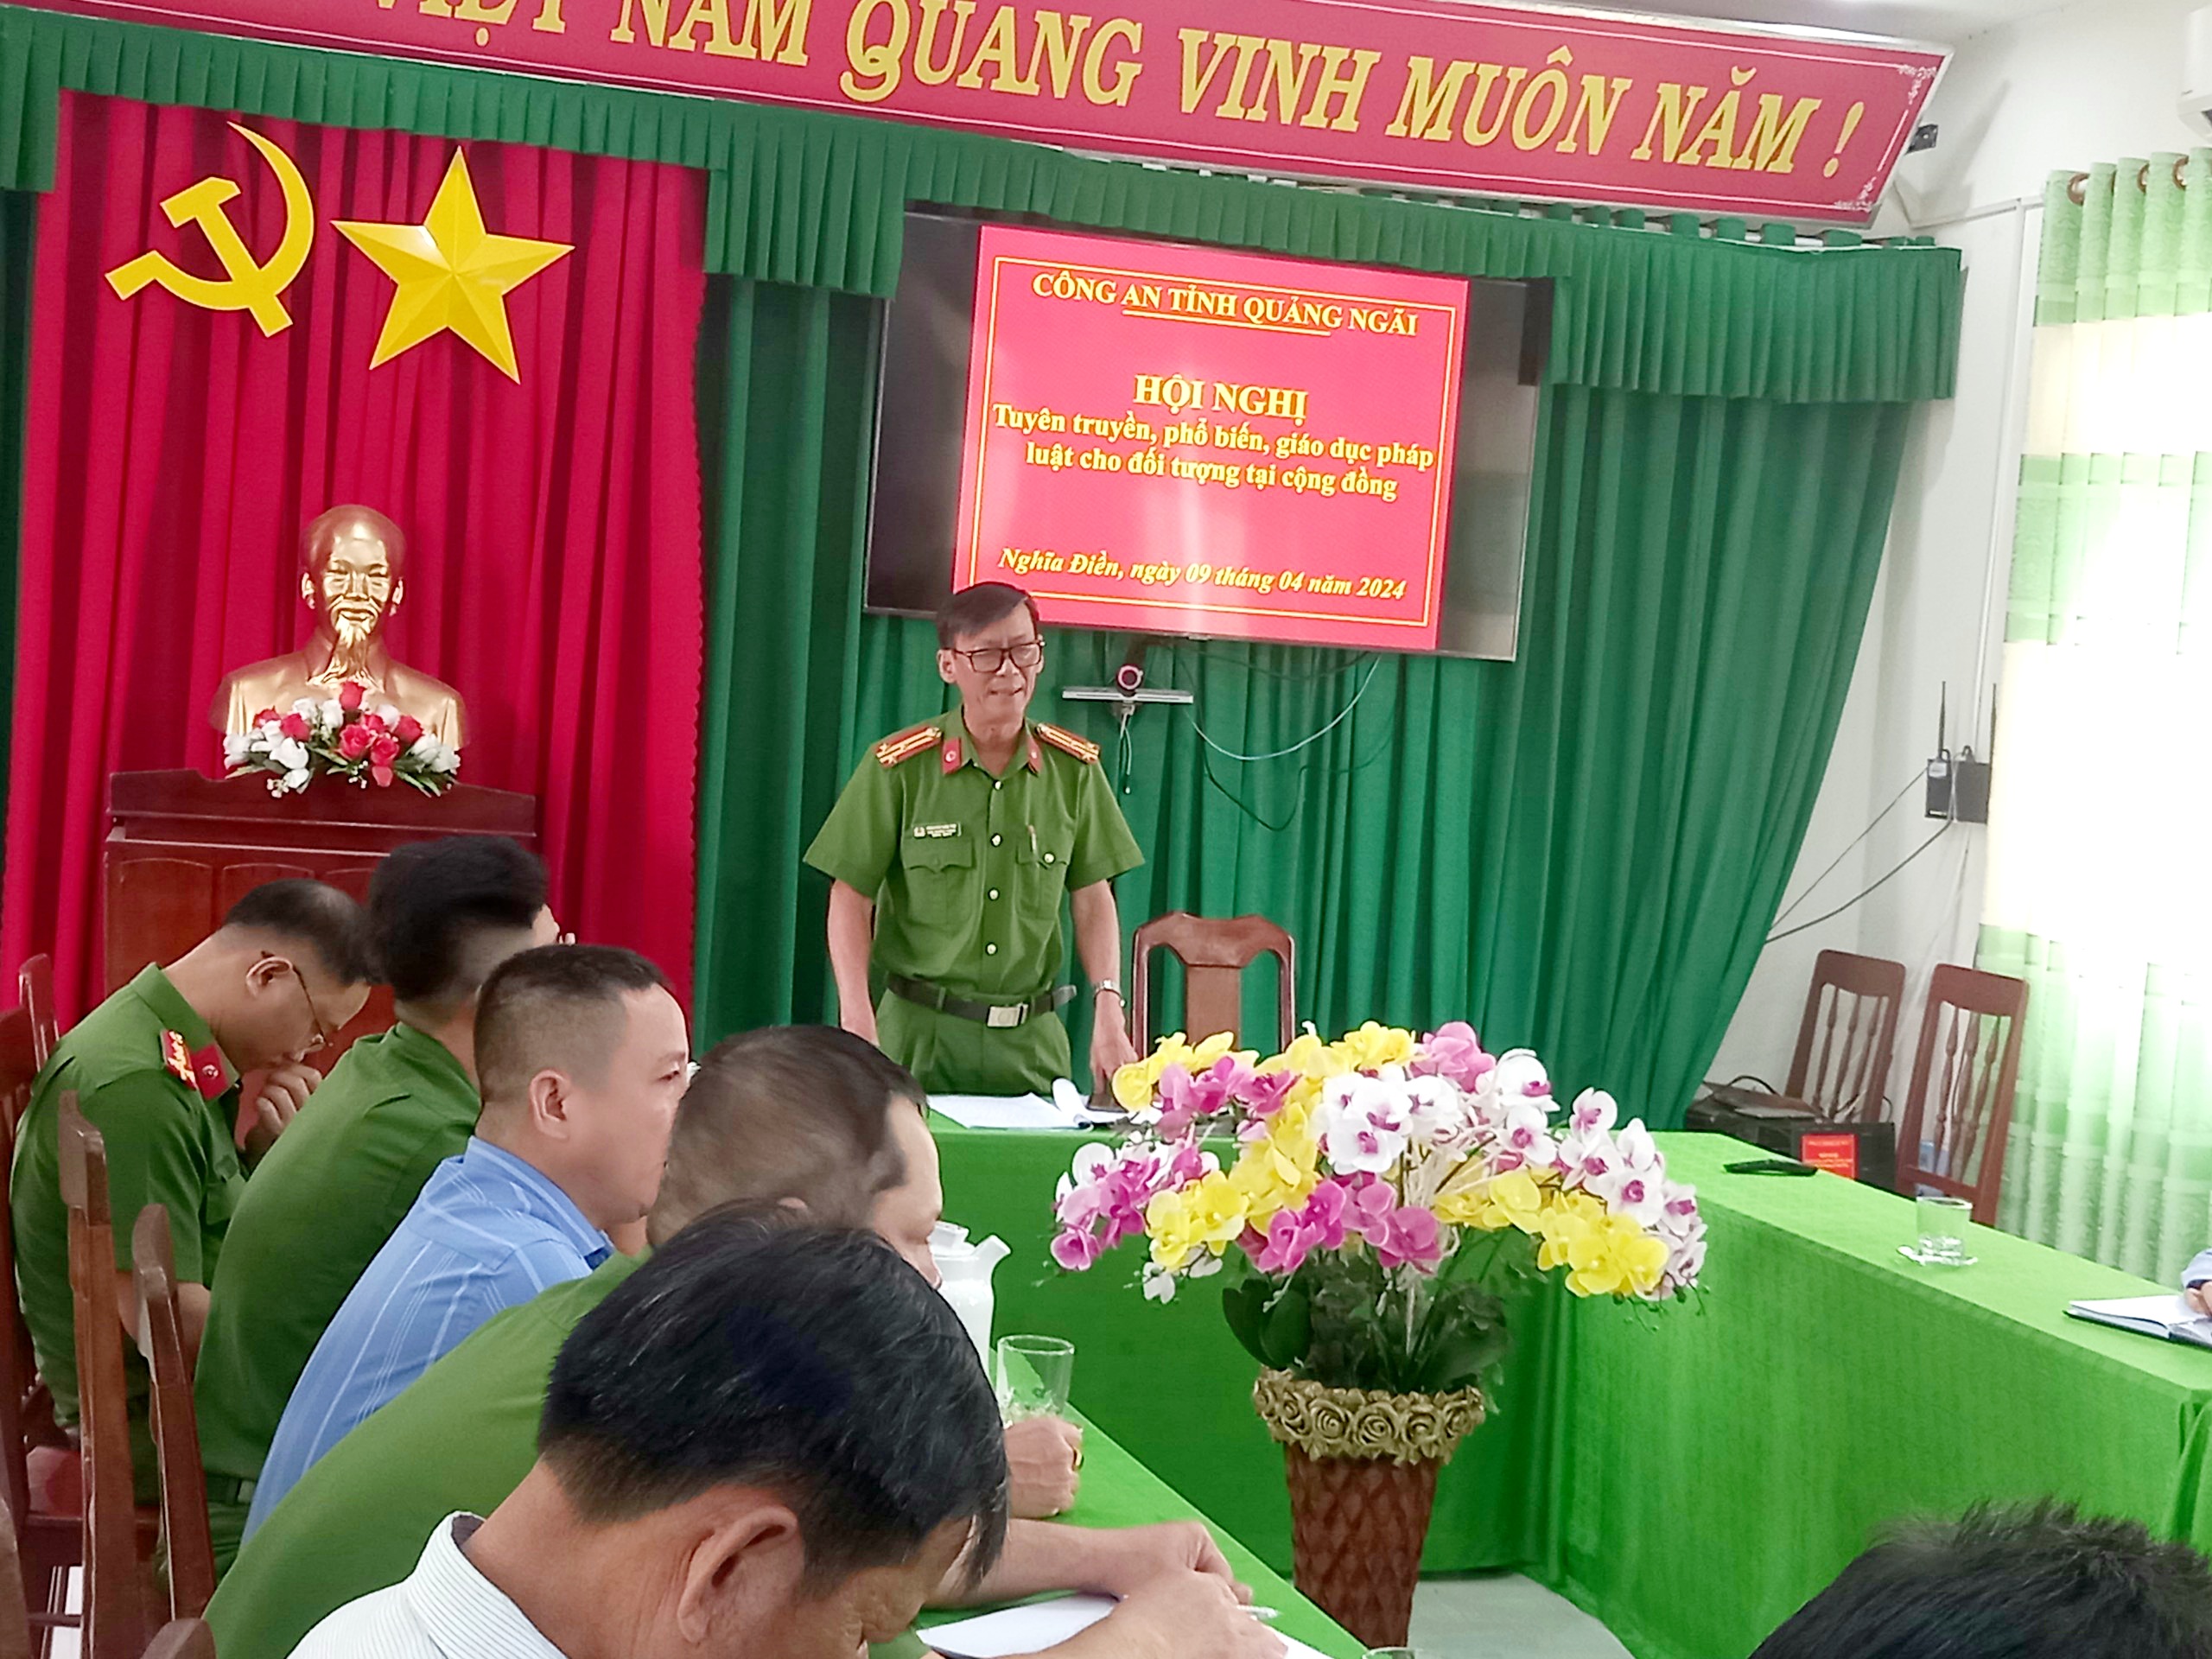 Đồng chí Nguyễn Văn Tìm - Phó trưởng phòng PC10 Công an tỉnh thực hiện công tác tuyên truyền